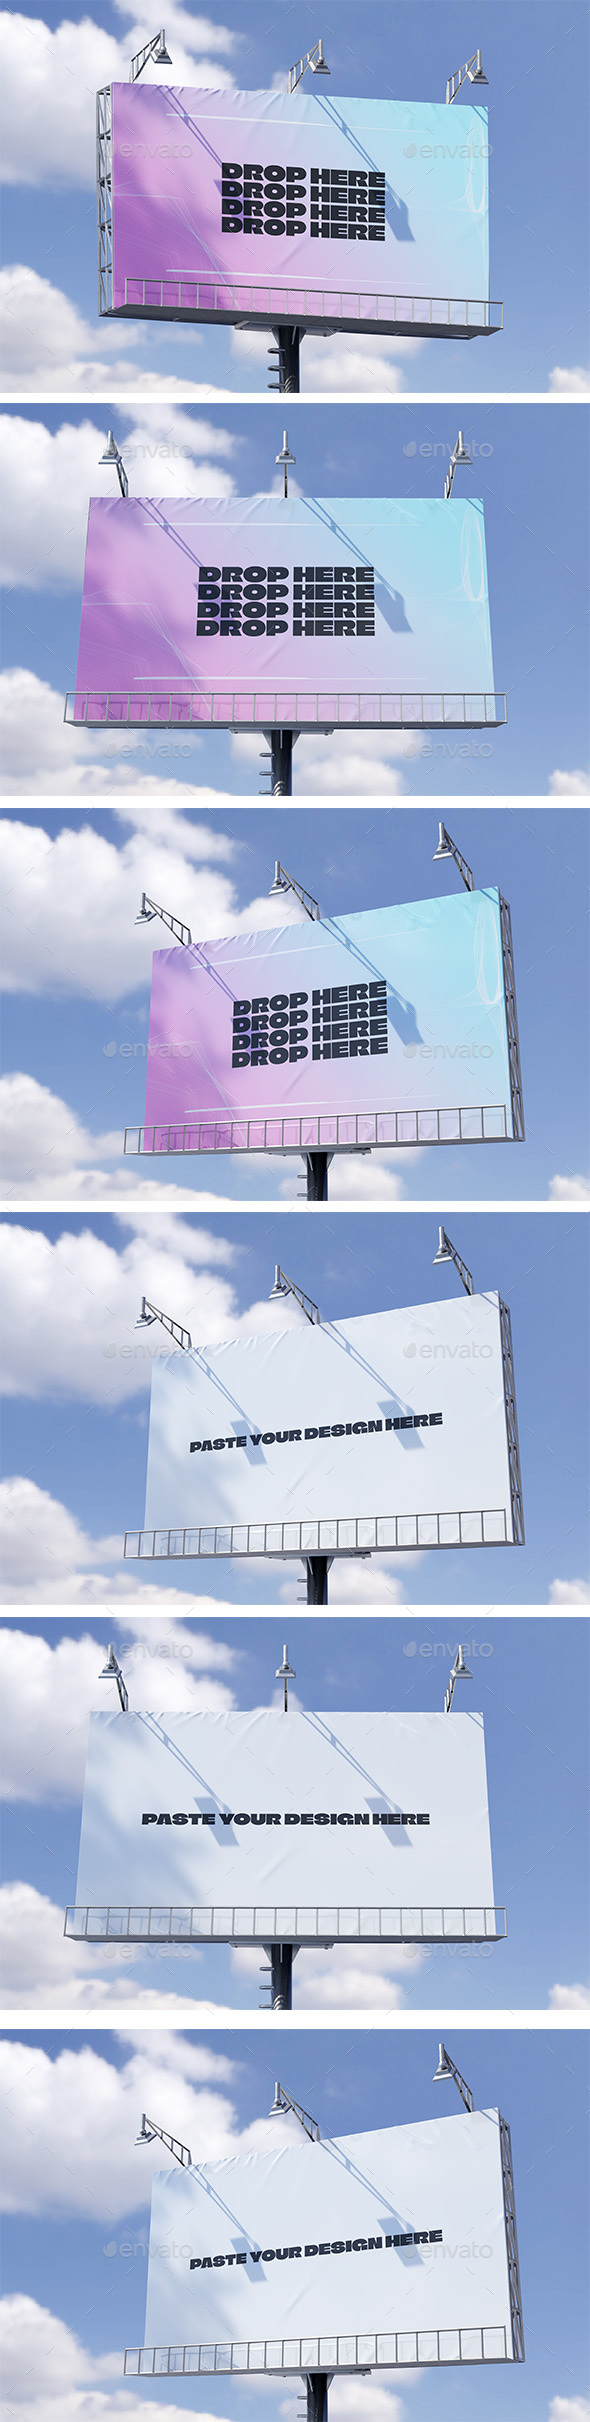 [DOWNLOAD]Billboard Landscape Mockup